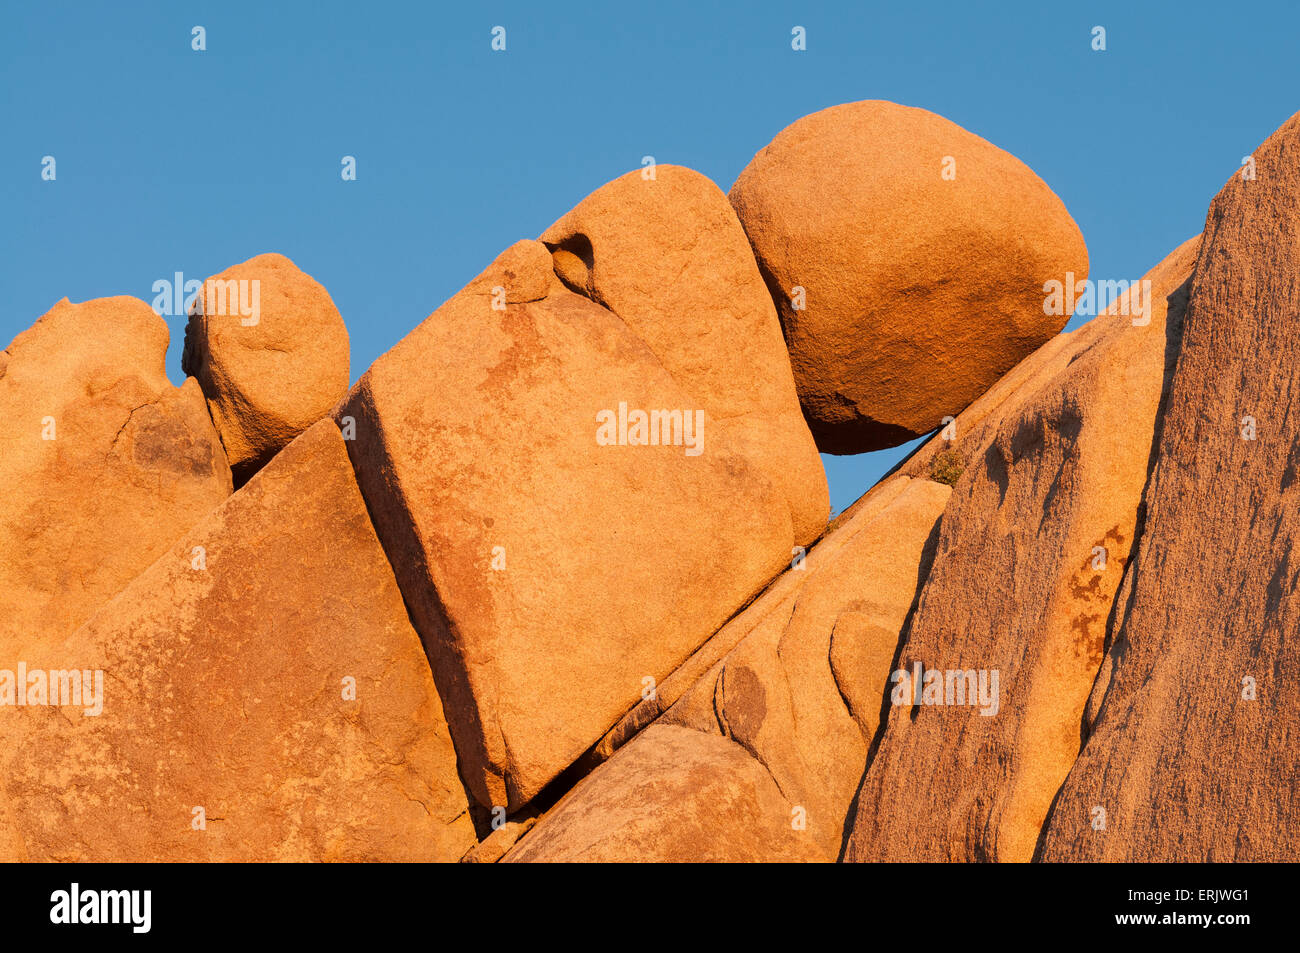 Rock formations à des rocks Jumbo de Joshua Tree National Park en Californie. Banque D'Images